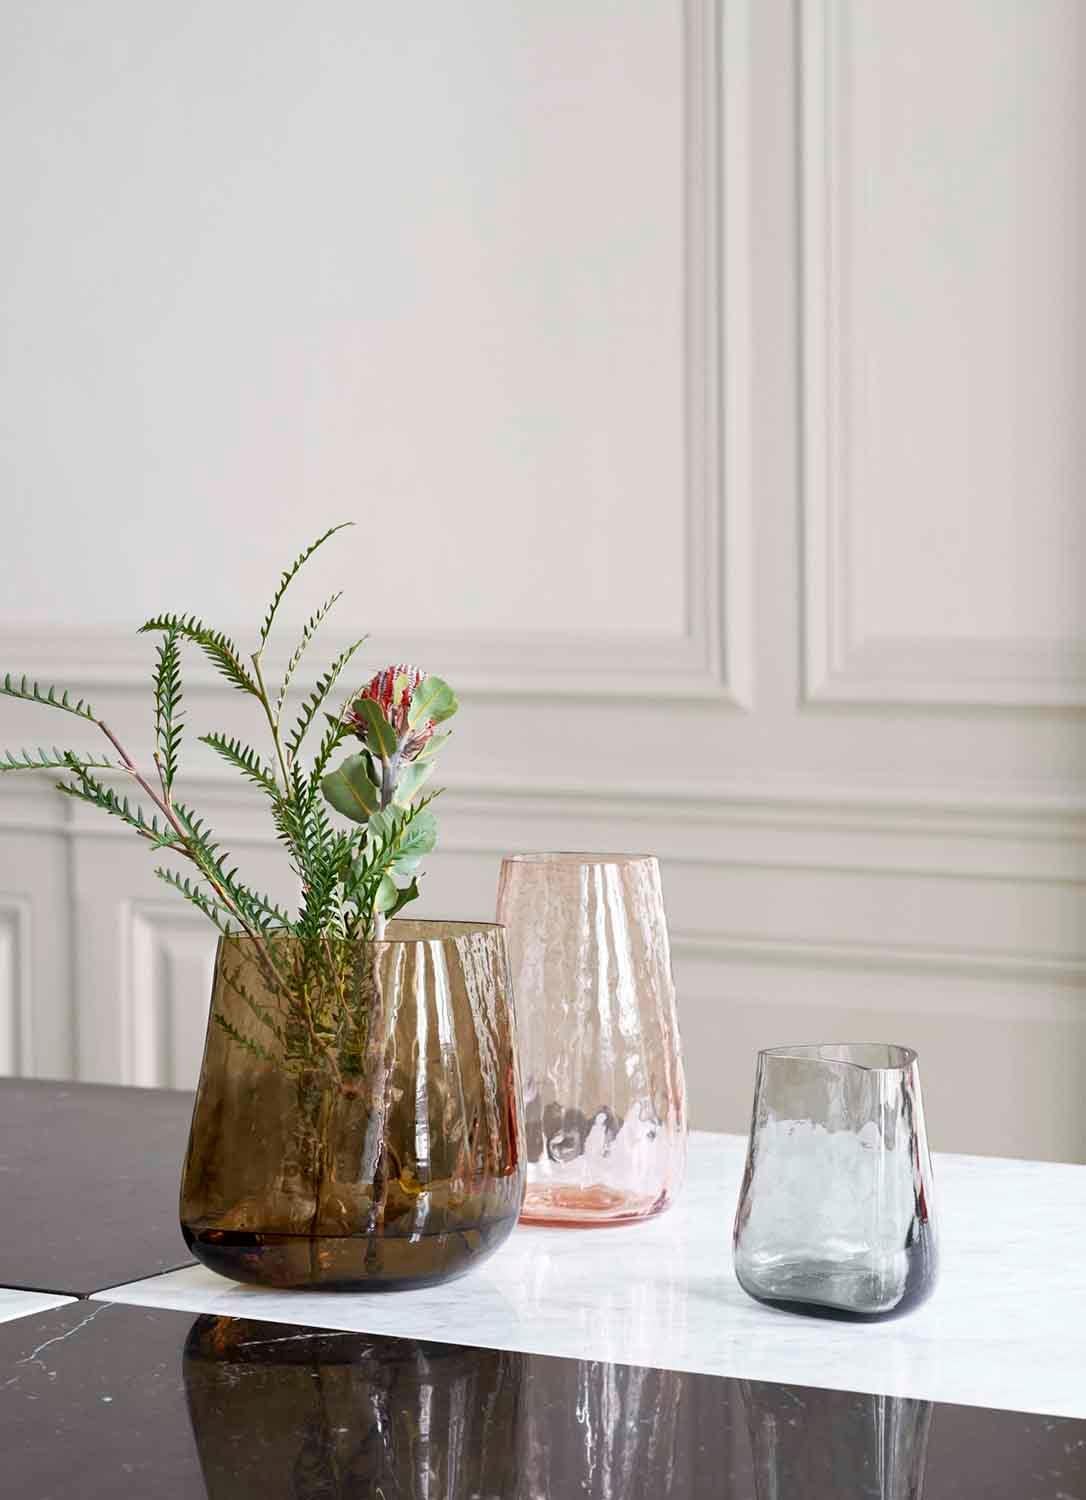 Diese aus Glas gefertigte Vase spielt mit der Transparenz des Materials und erzeugt einen gewellten, flüssigkeitsähnlichen Effekt. 
Es ist Teil der Collect-Serie, einer von Space Copenhagen entworfenen, kuratierten Linie von wunderschön gefertigten